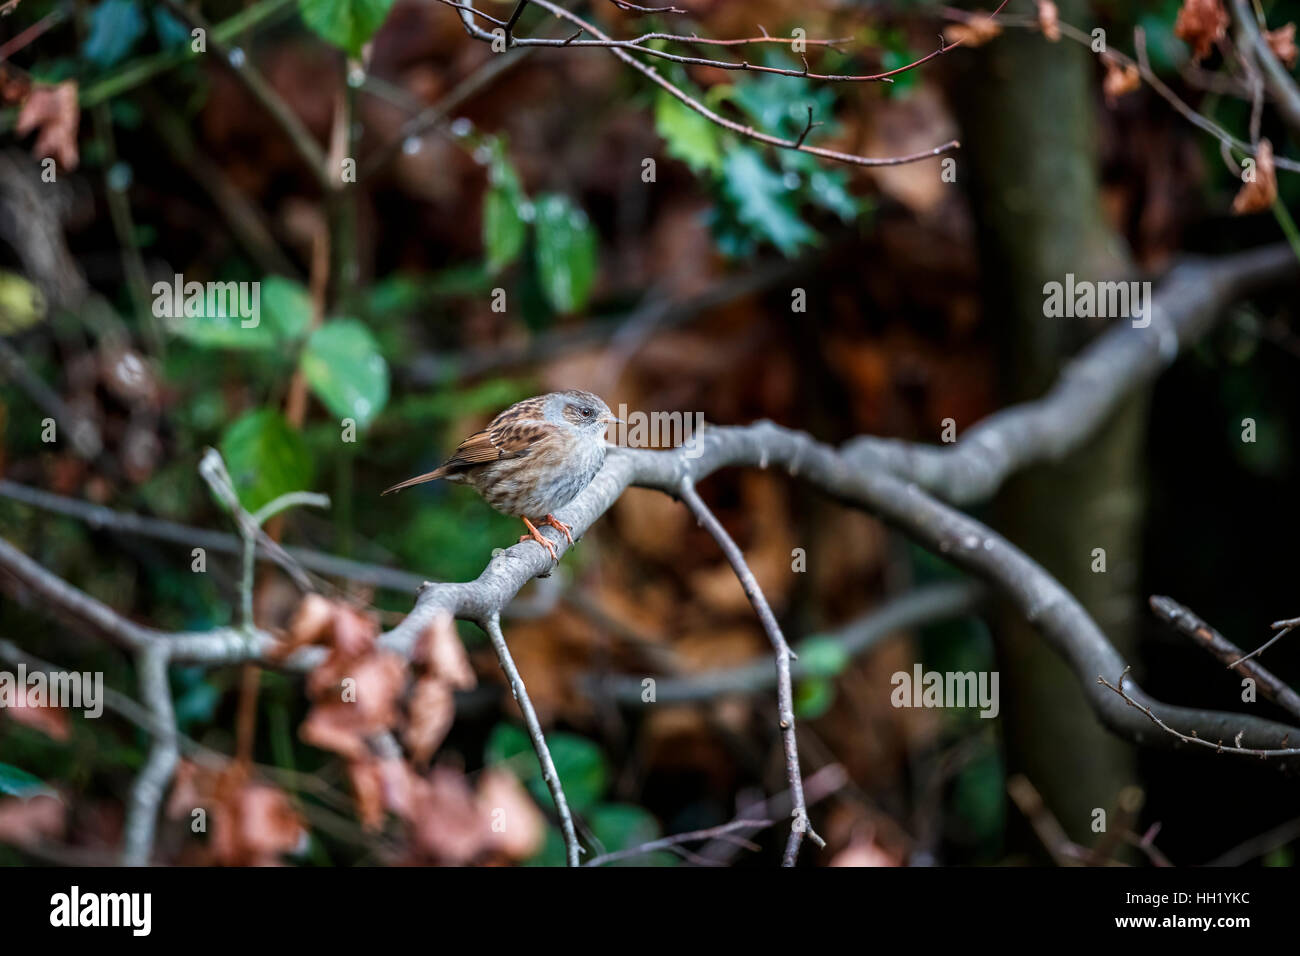 Dunnock o hedge sparrow, Prunella modularis, gonfi contro il freddo, appollaiate su un ramo in un giardino è Surrey, sud-est dell'Inghilterra in inverno Foto Stock